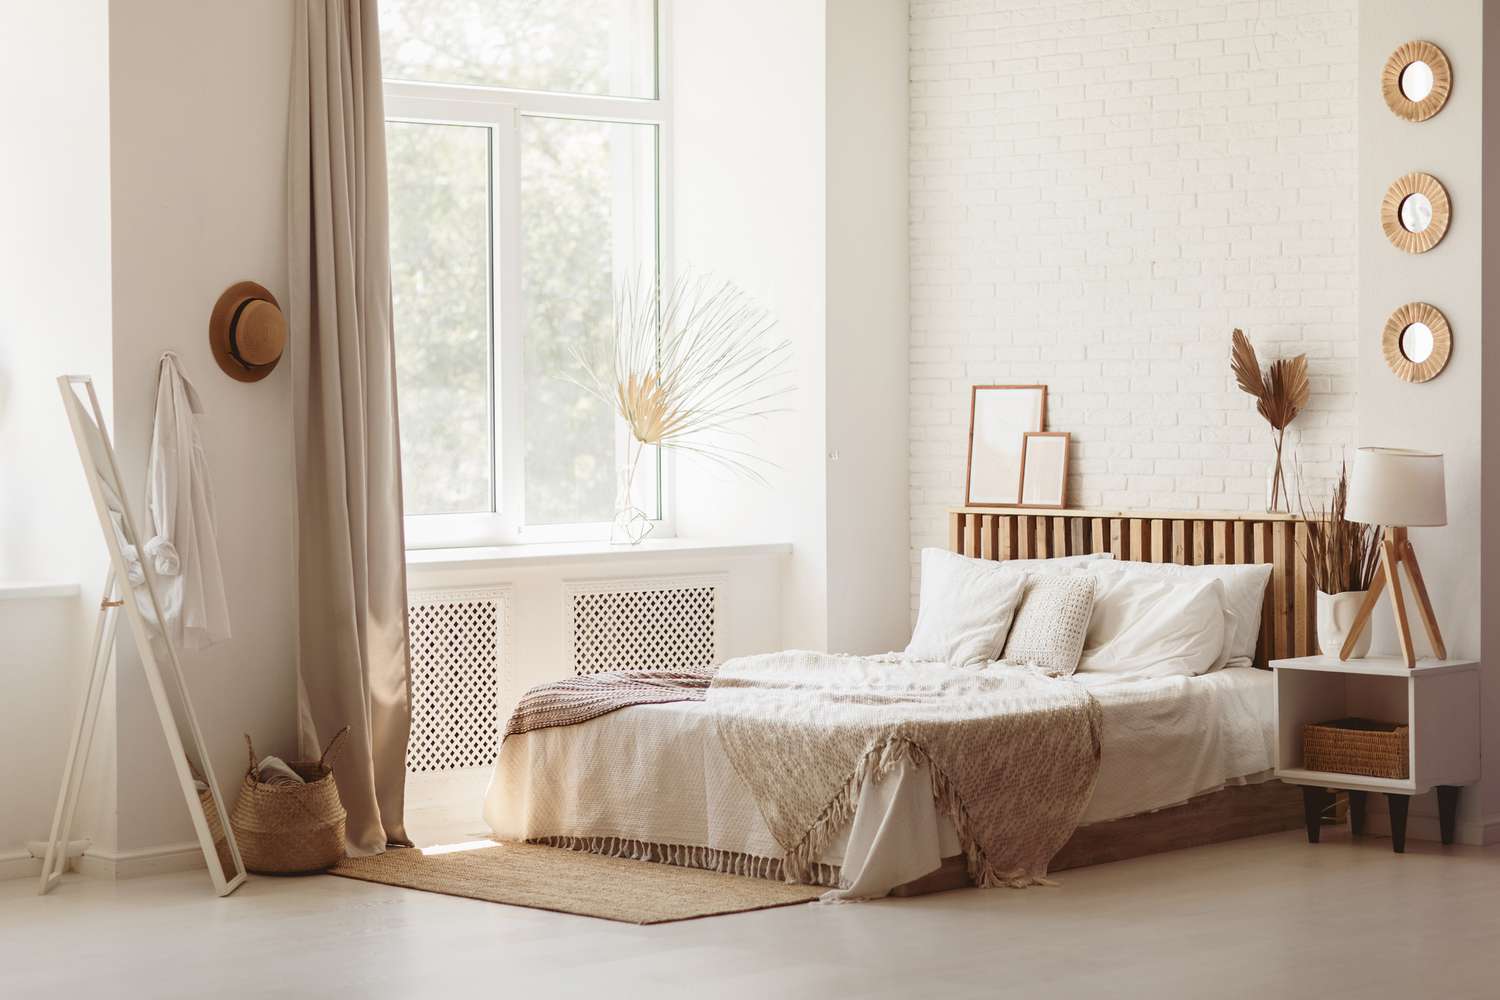 Helles und geräumiges Schlafzimmer mit weißer Wand und Öko-DIY-Holzmöbeln. Gemütliches helles Schlafzimmer im rustikalen Stil.